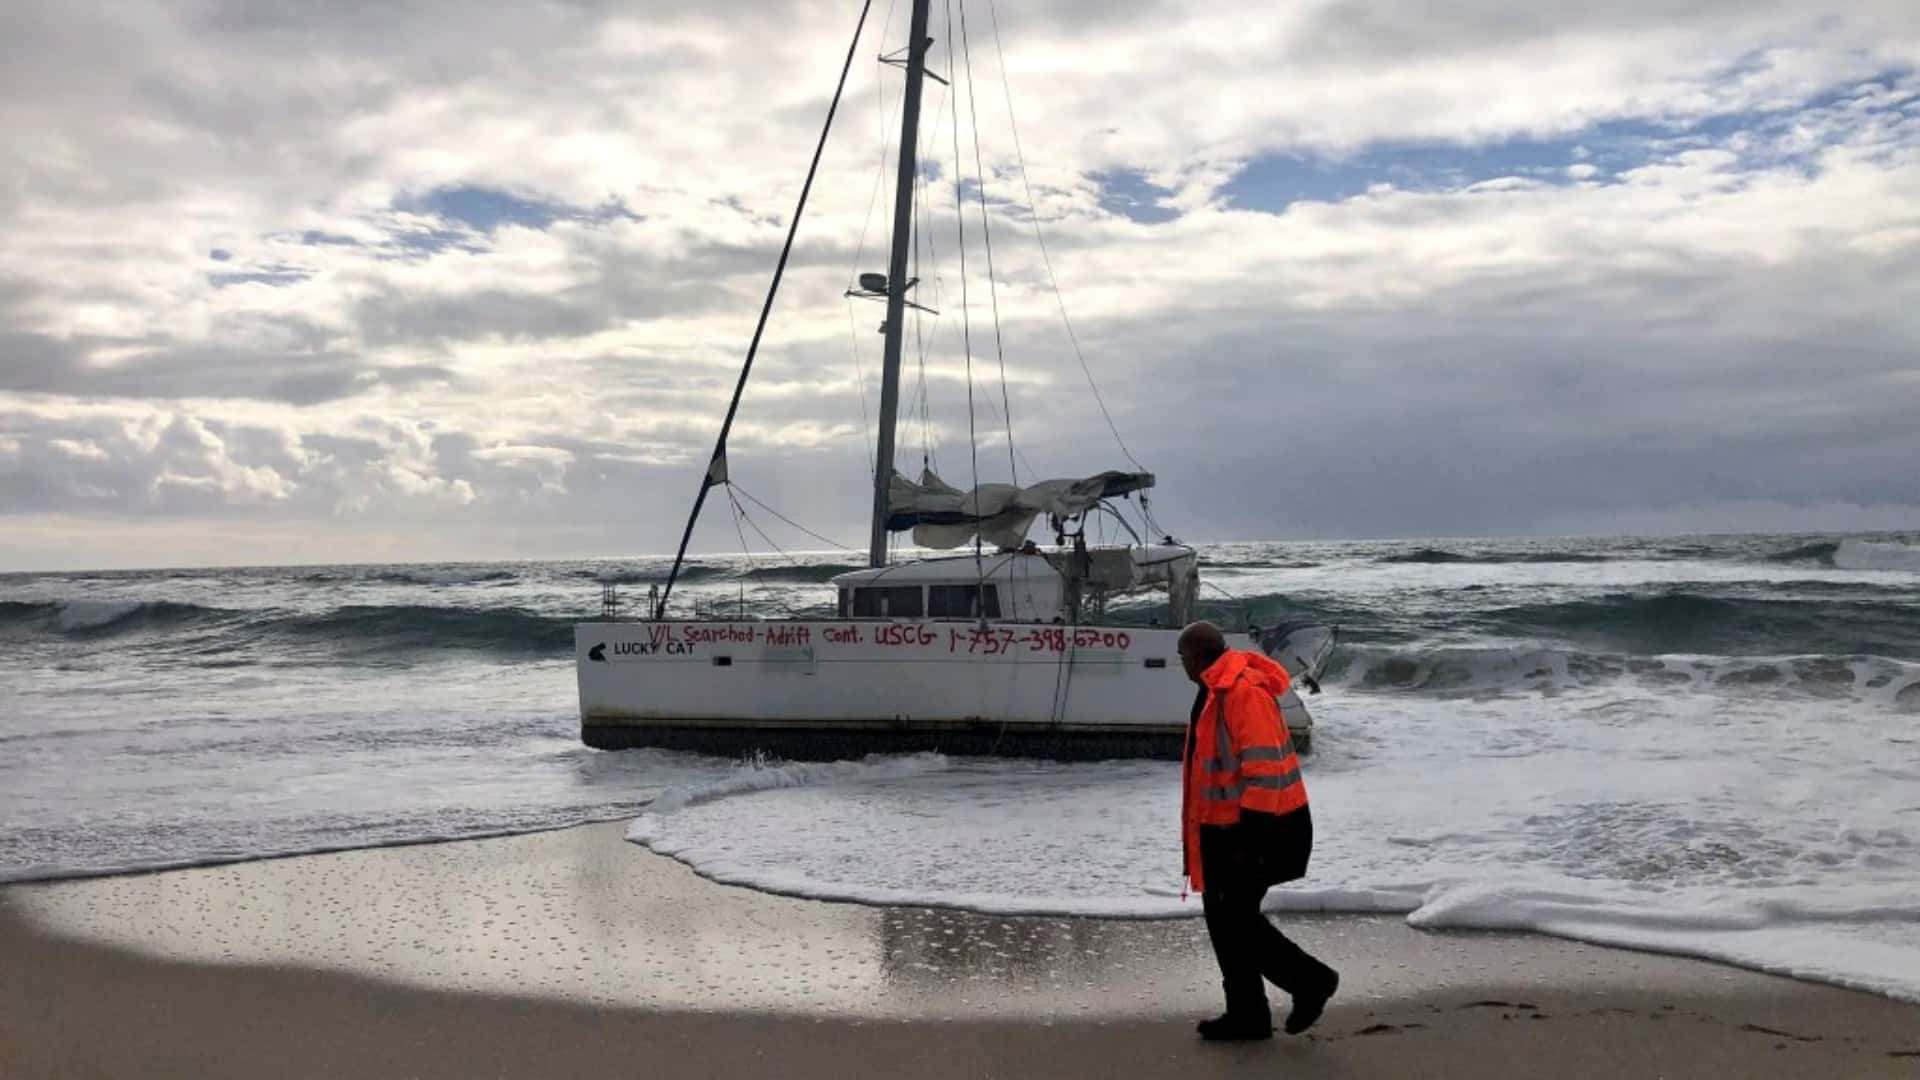 El catamarán varado en la playa de Area Maior, en Muros, tras un naufragio en Estados Unidos | @SALVAMENTOGOB